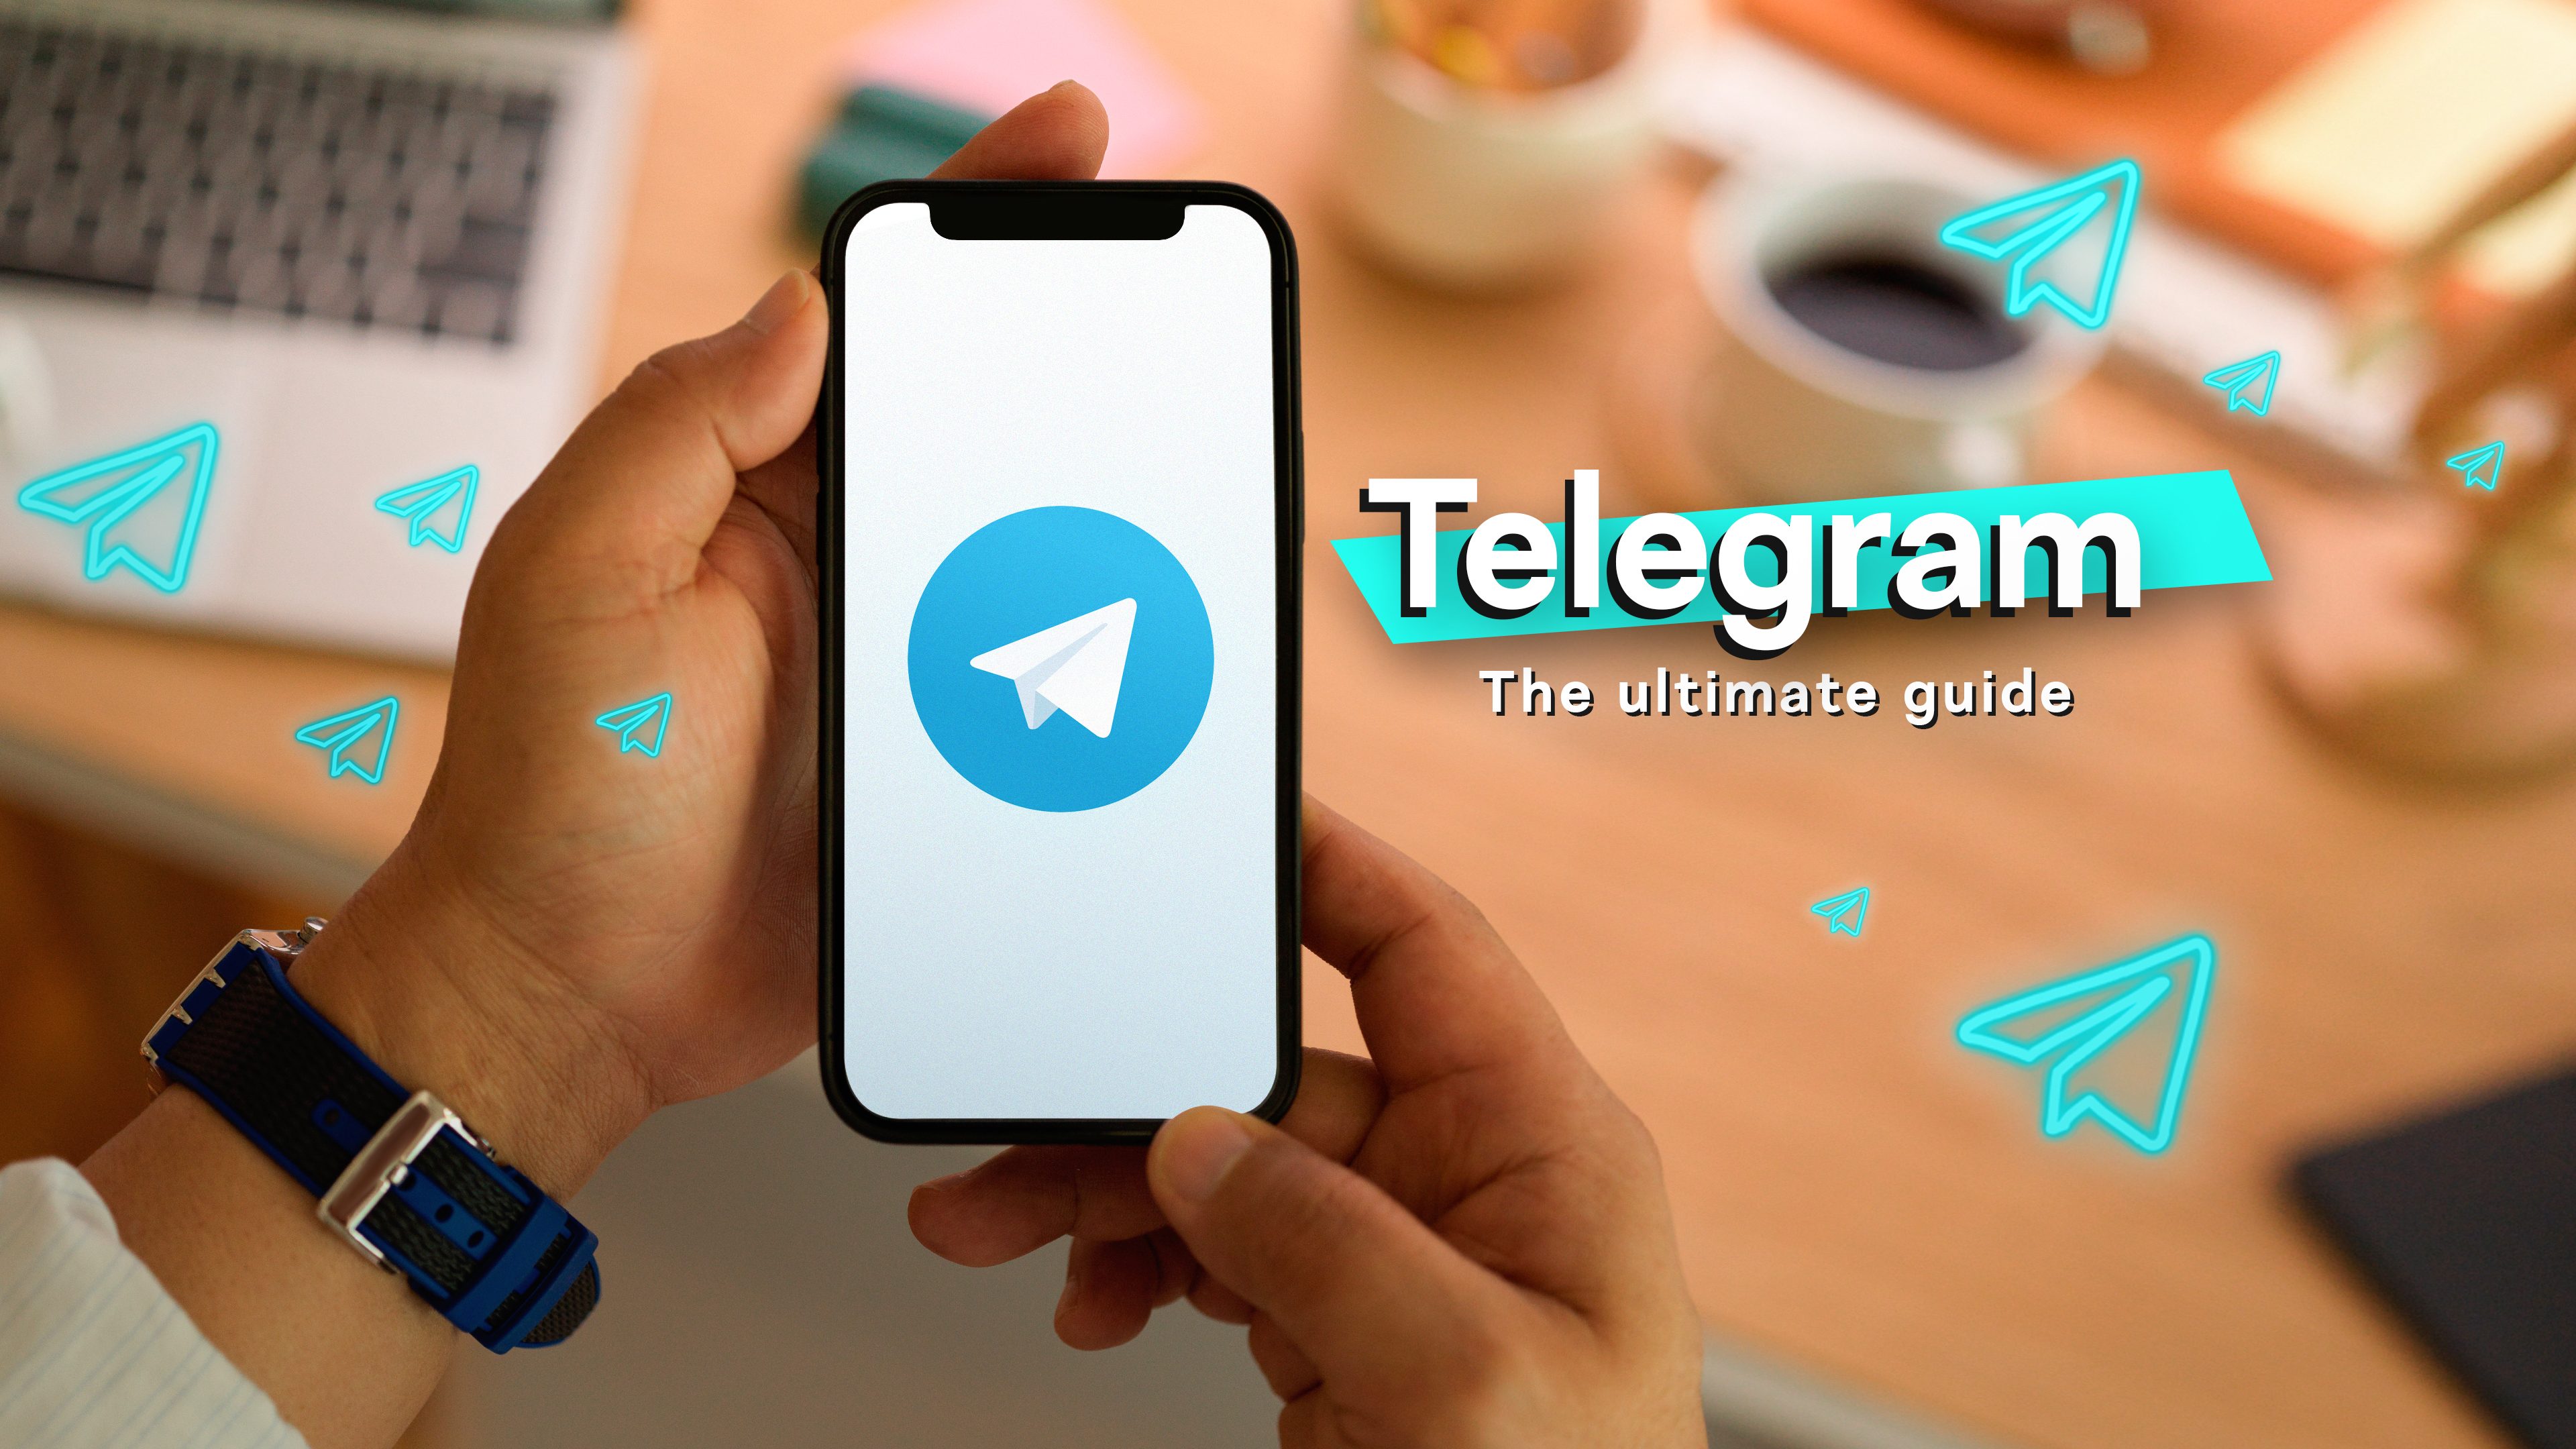 Telegram a gagné plus de 70 millions suite la à panne de Facebook